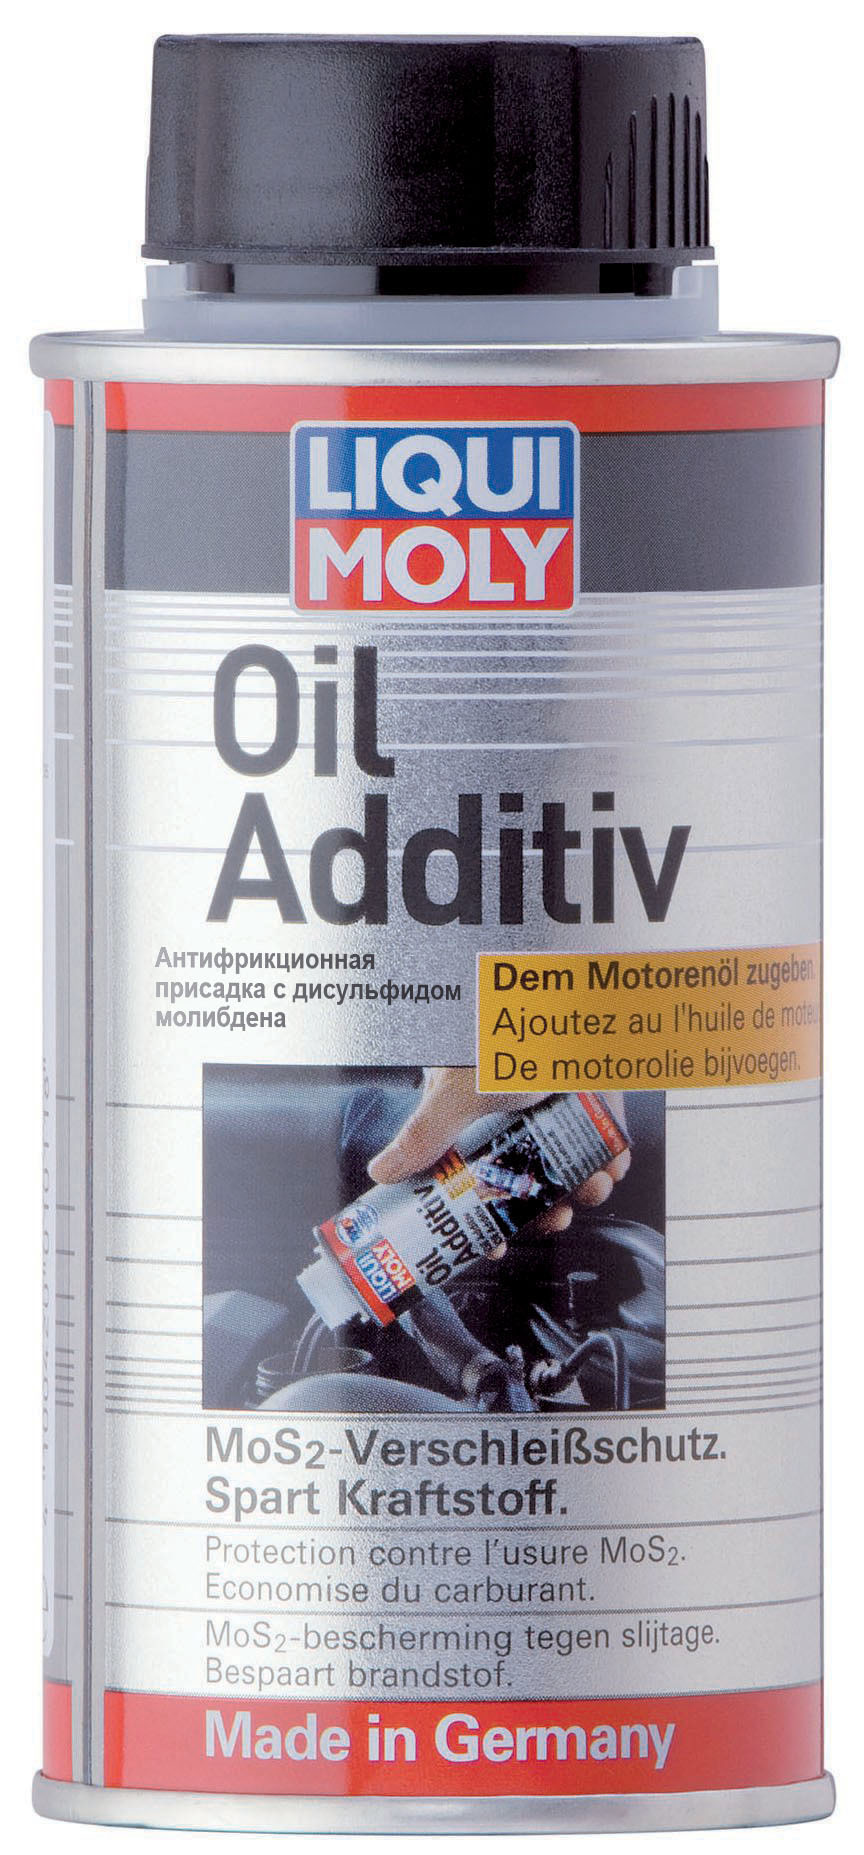 Liqui Moly Oil Additiv Присадка с дисульфидом молибдена (Mos2) в моторное масло